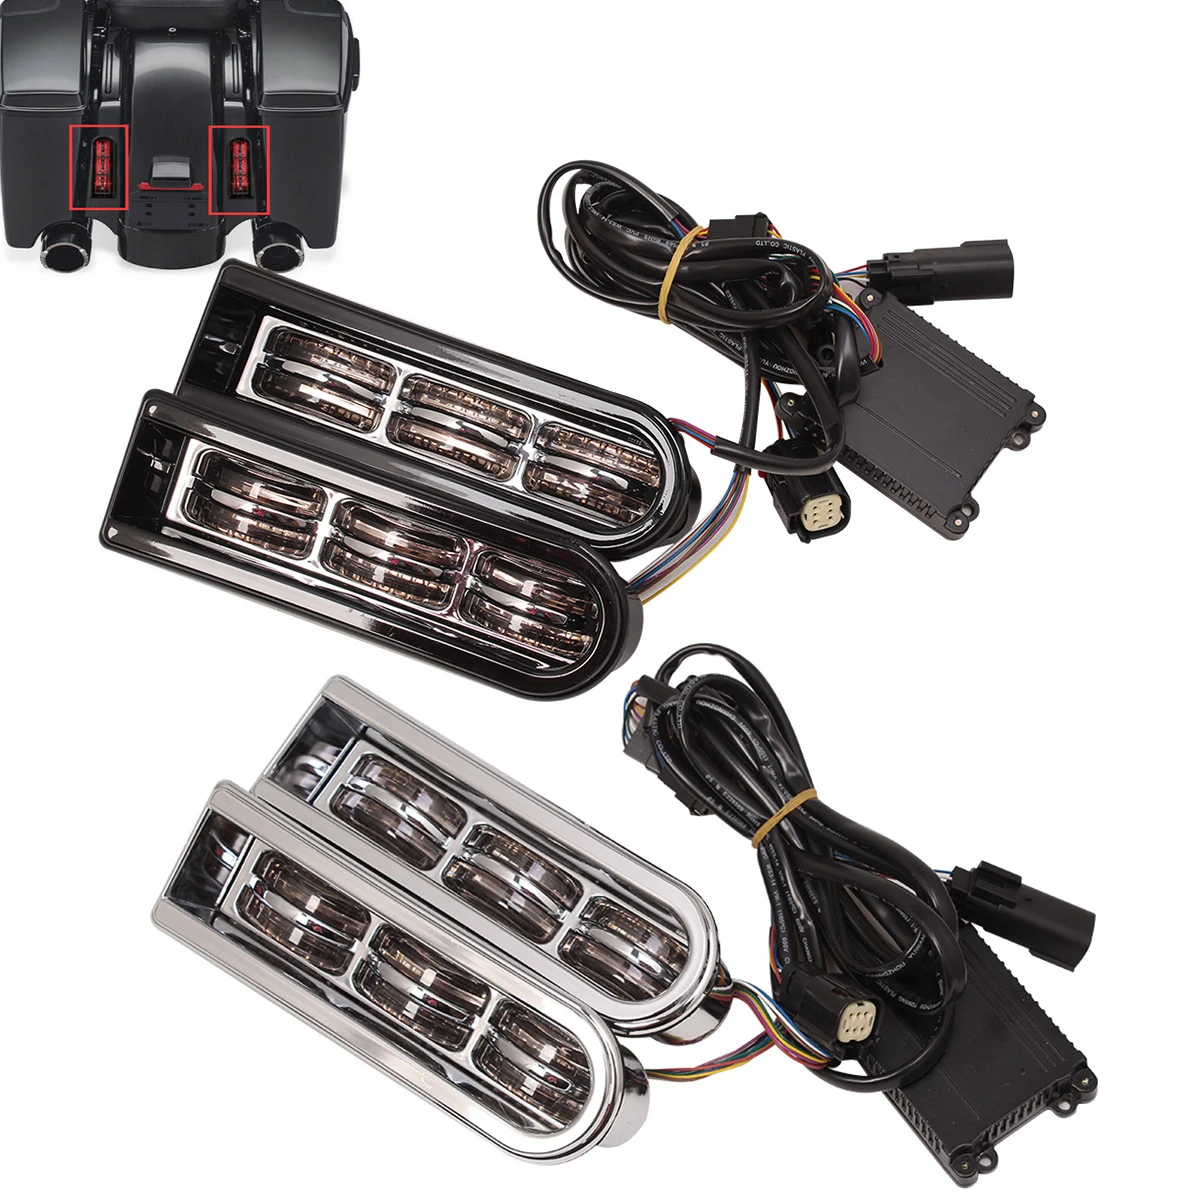 

Motorcycle Accent Saddlebag Filler Inserts Support LED Lights For Harley Touring Road Electra Glide CVO Limited FLHTKSE 2014-Up